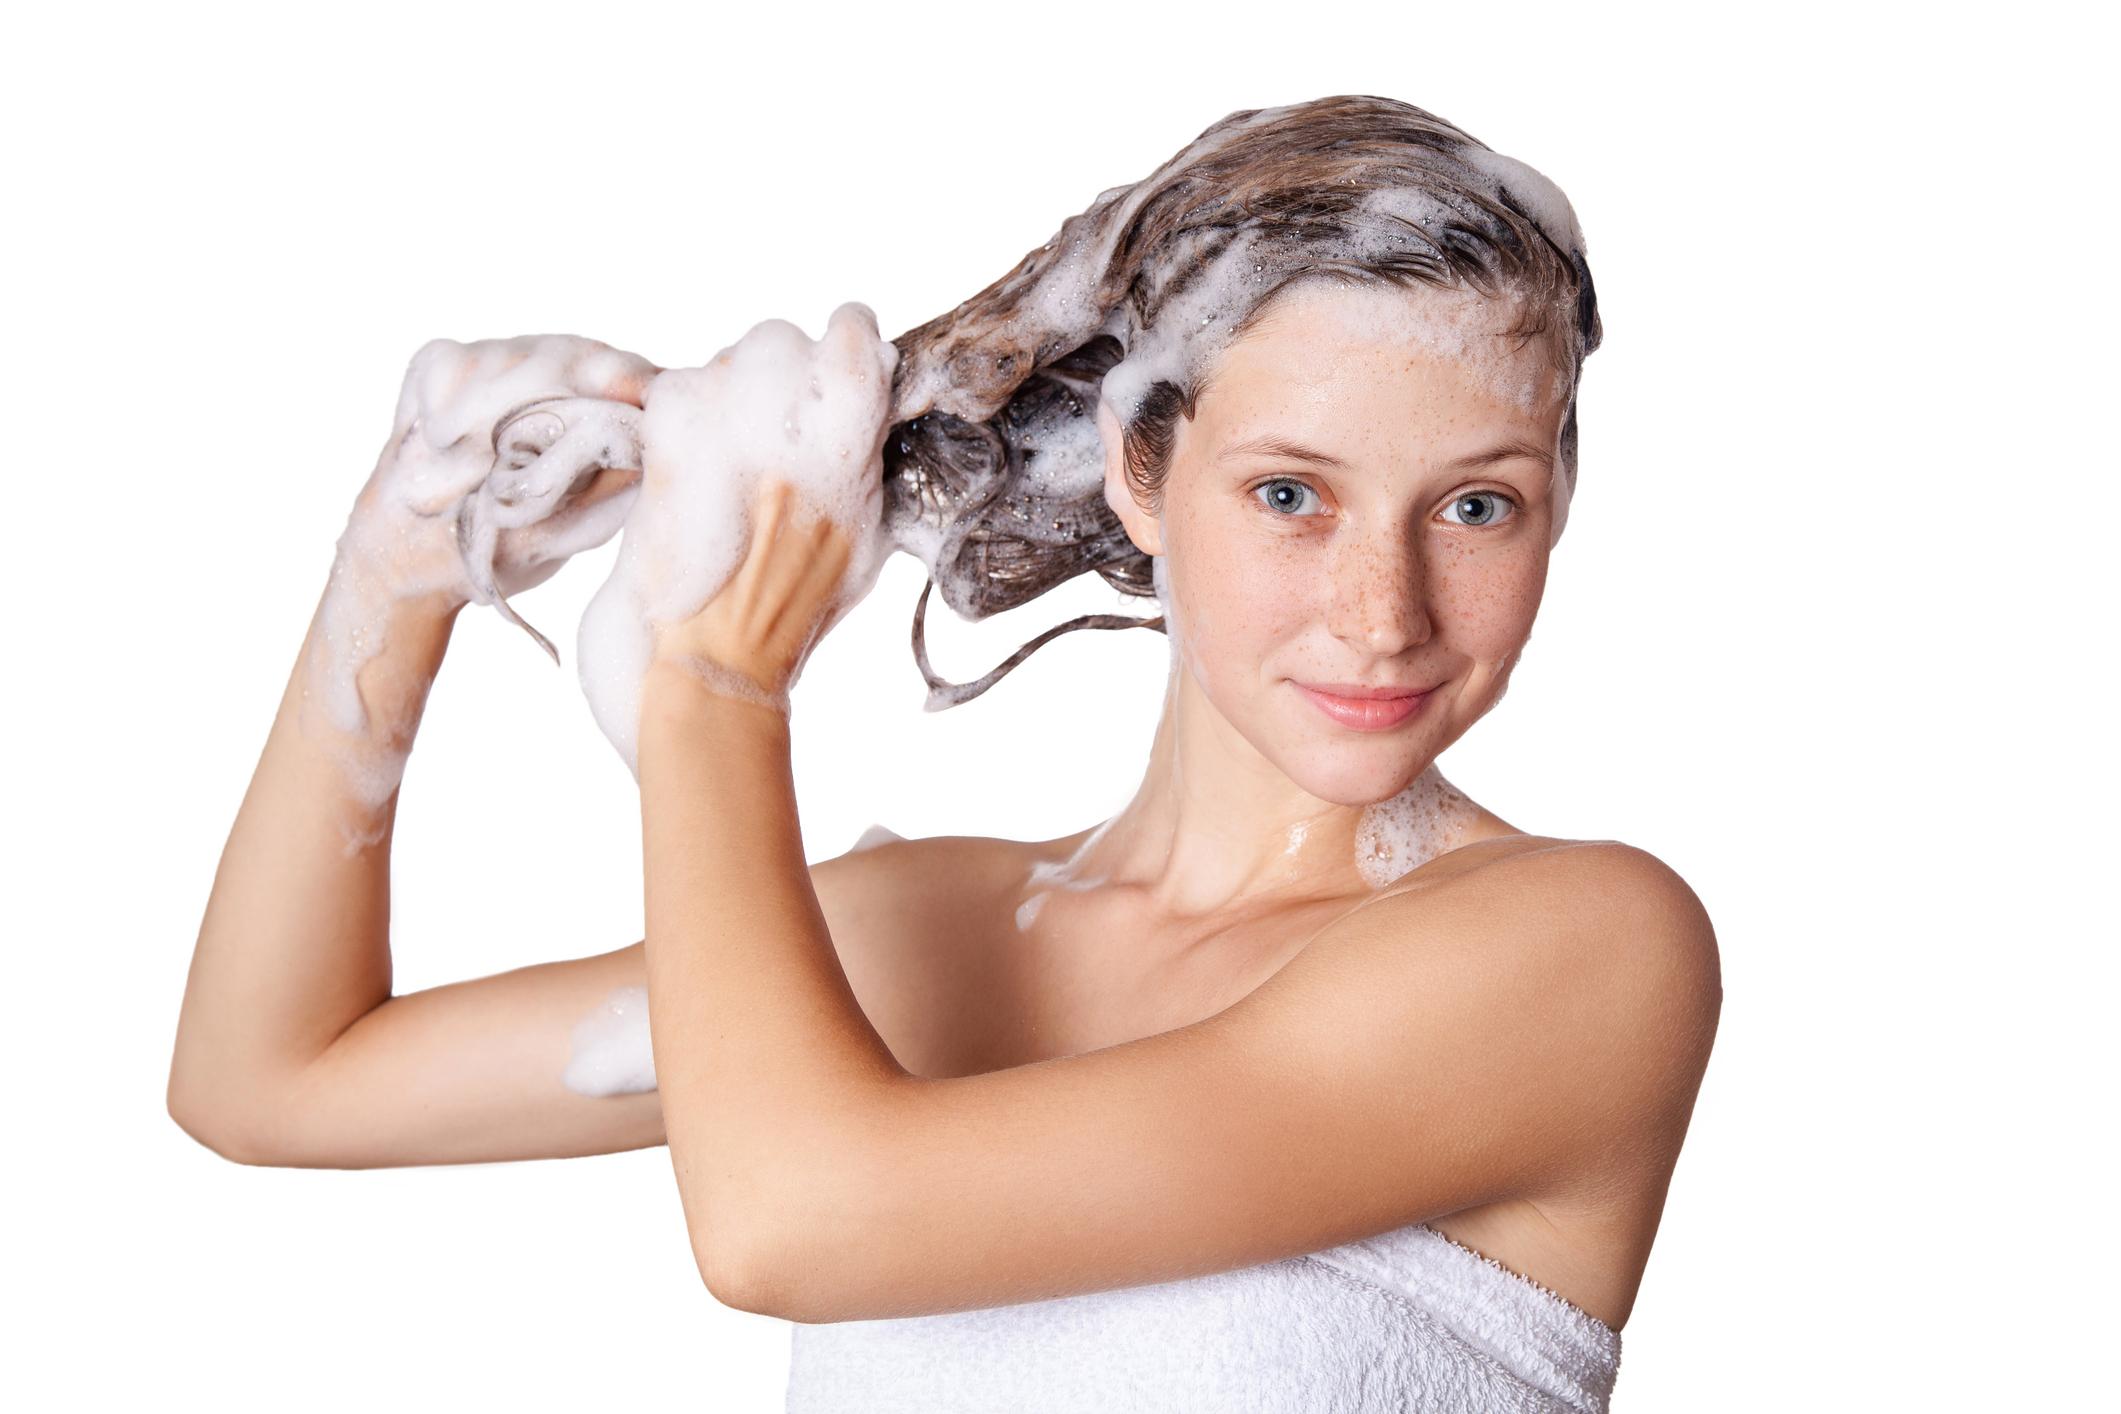 Šamponi bez sulfata pružaju zdraviji izgled kose